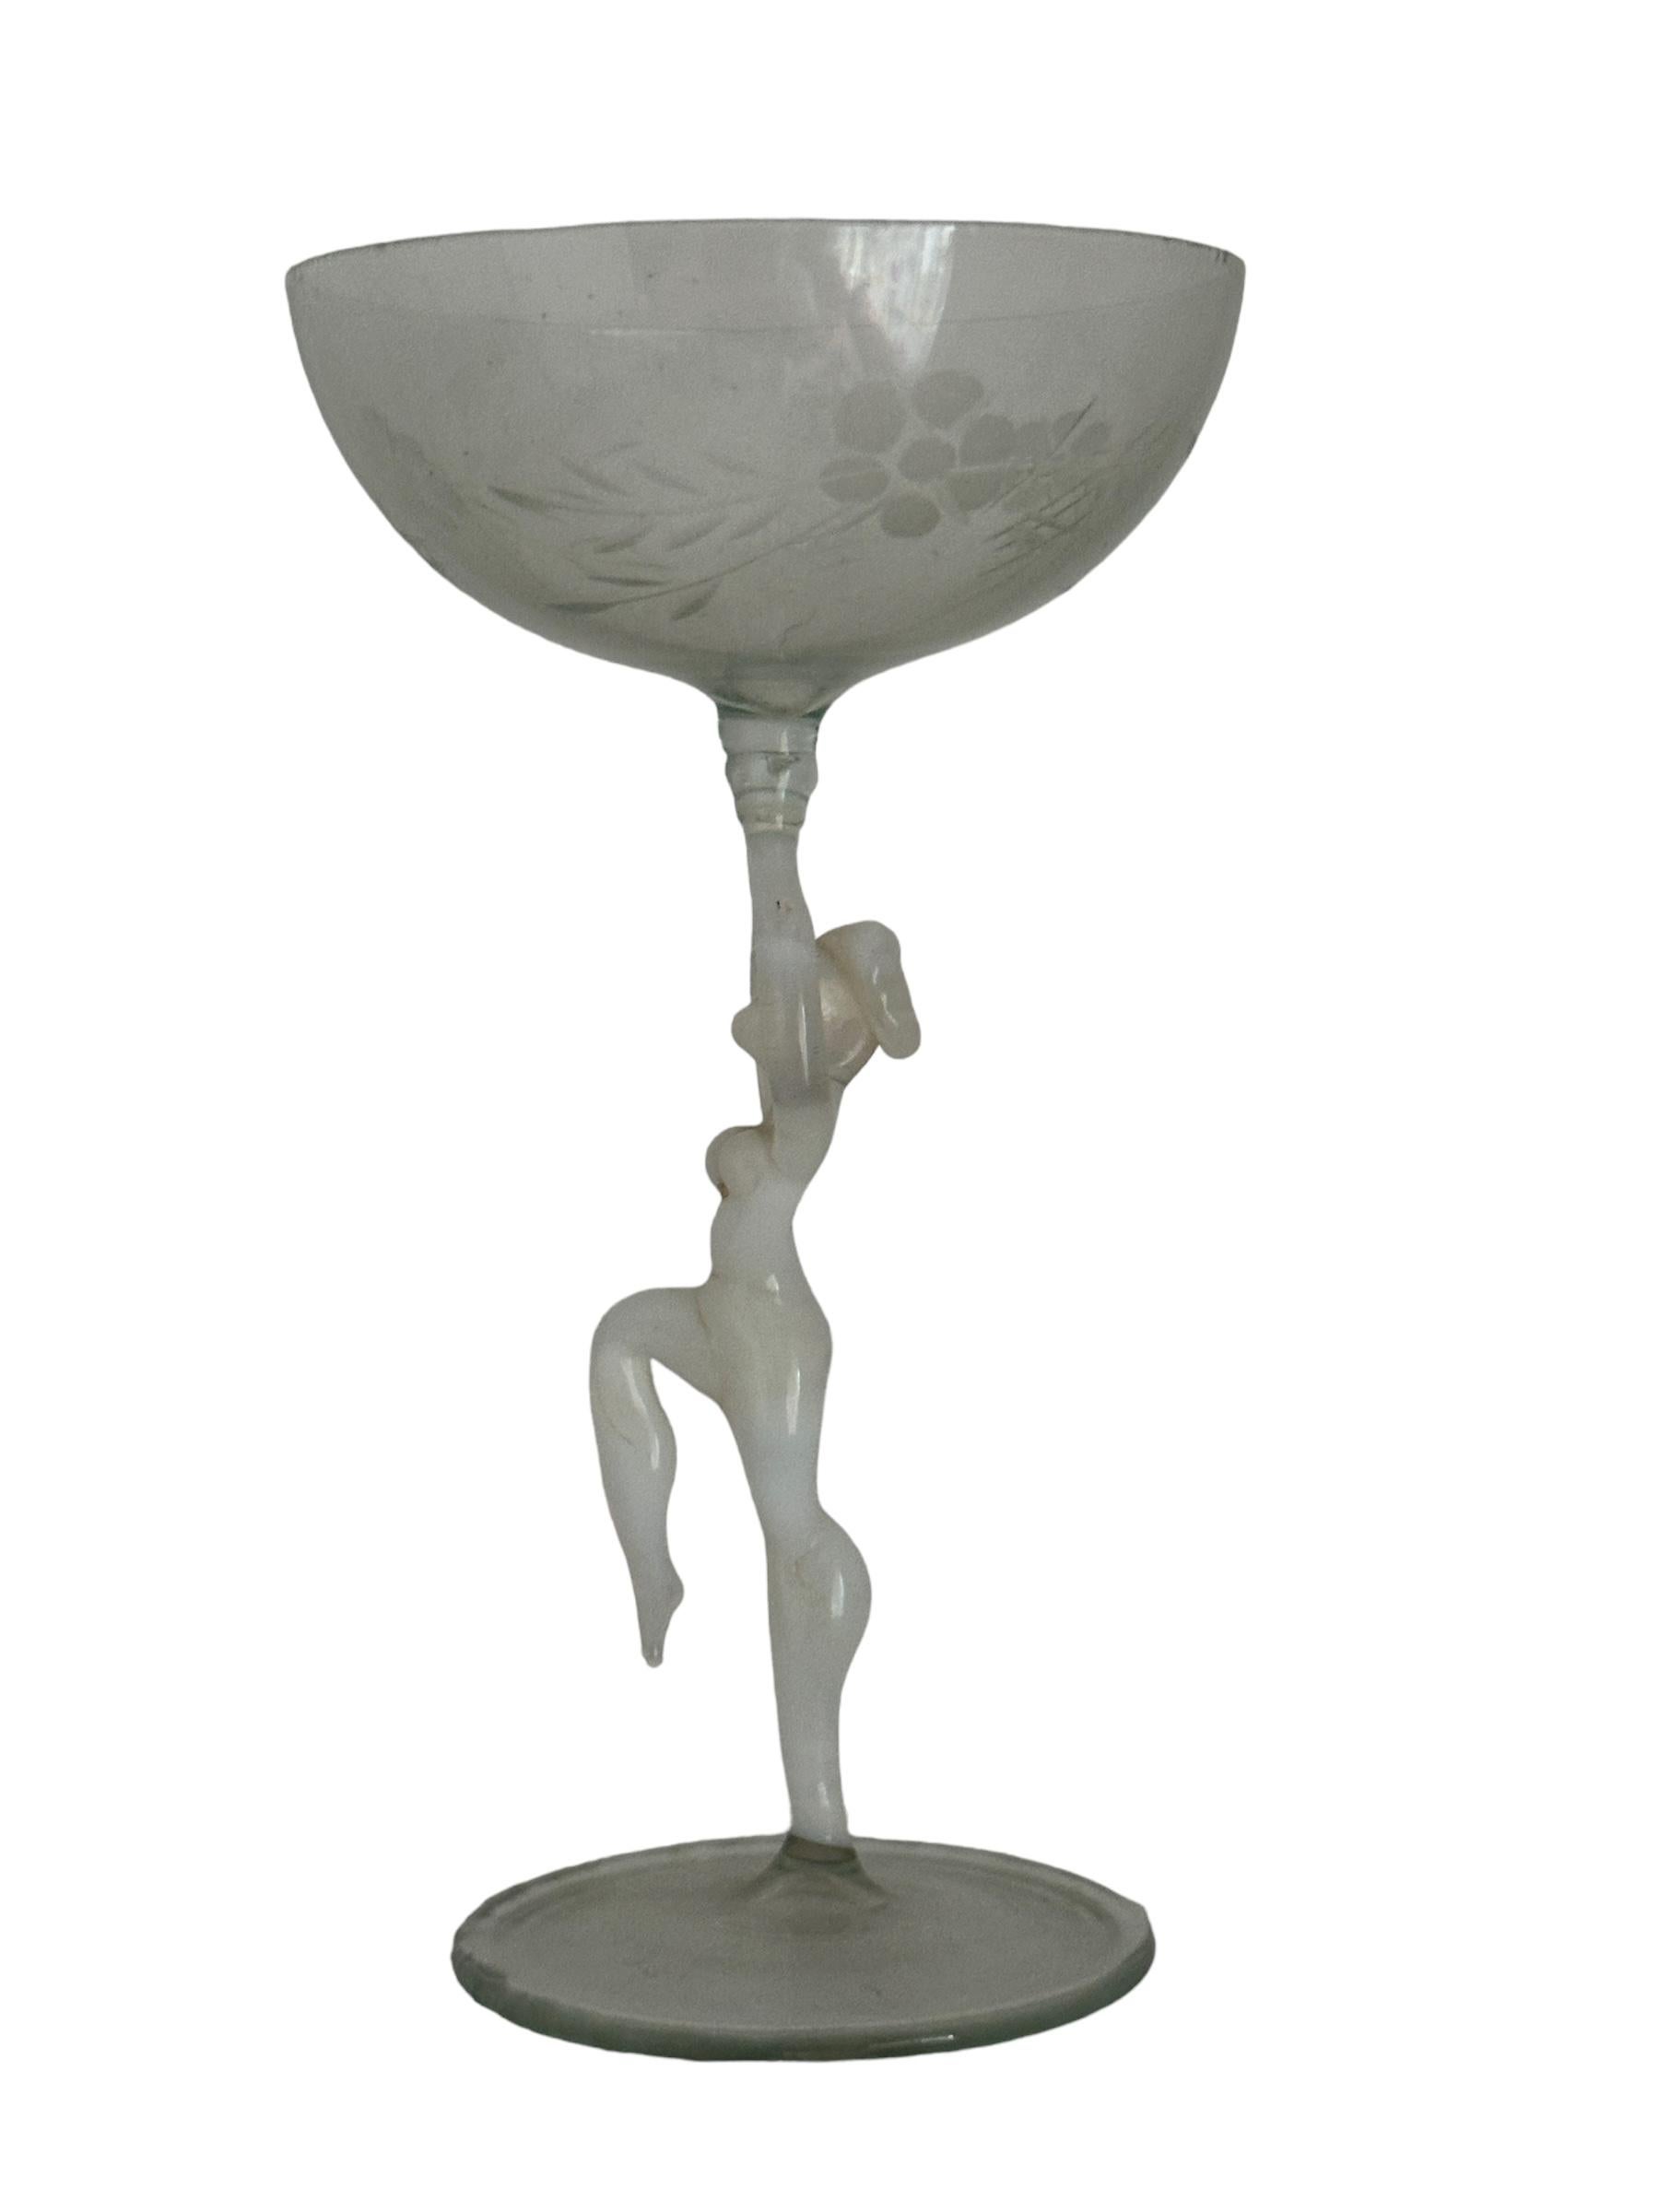 Dies ist ein wunderschönes Likörglas mit einem Stiel aus Österreich. Sie hat einen nackten Frauenschaft und ist im Bimini-Stil gehalten. Das Glas hat ein wunderschönes Design, auf dem Stiel ist eine nackte Dame in weißer Farbe abgebildet. Der Sockel